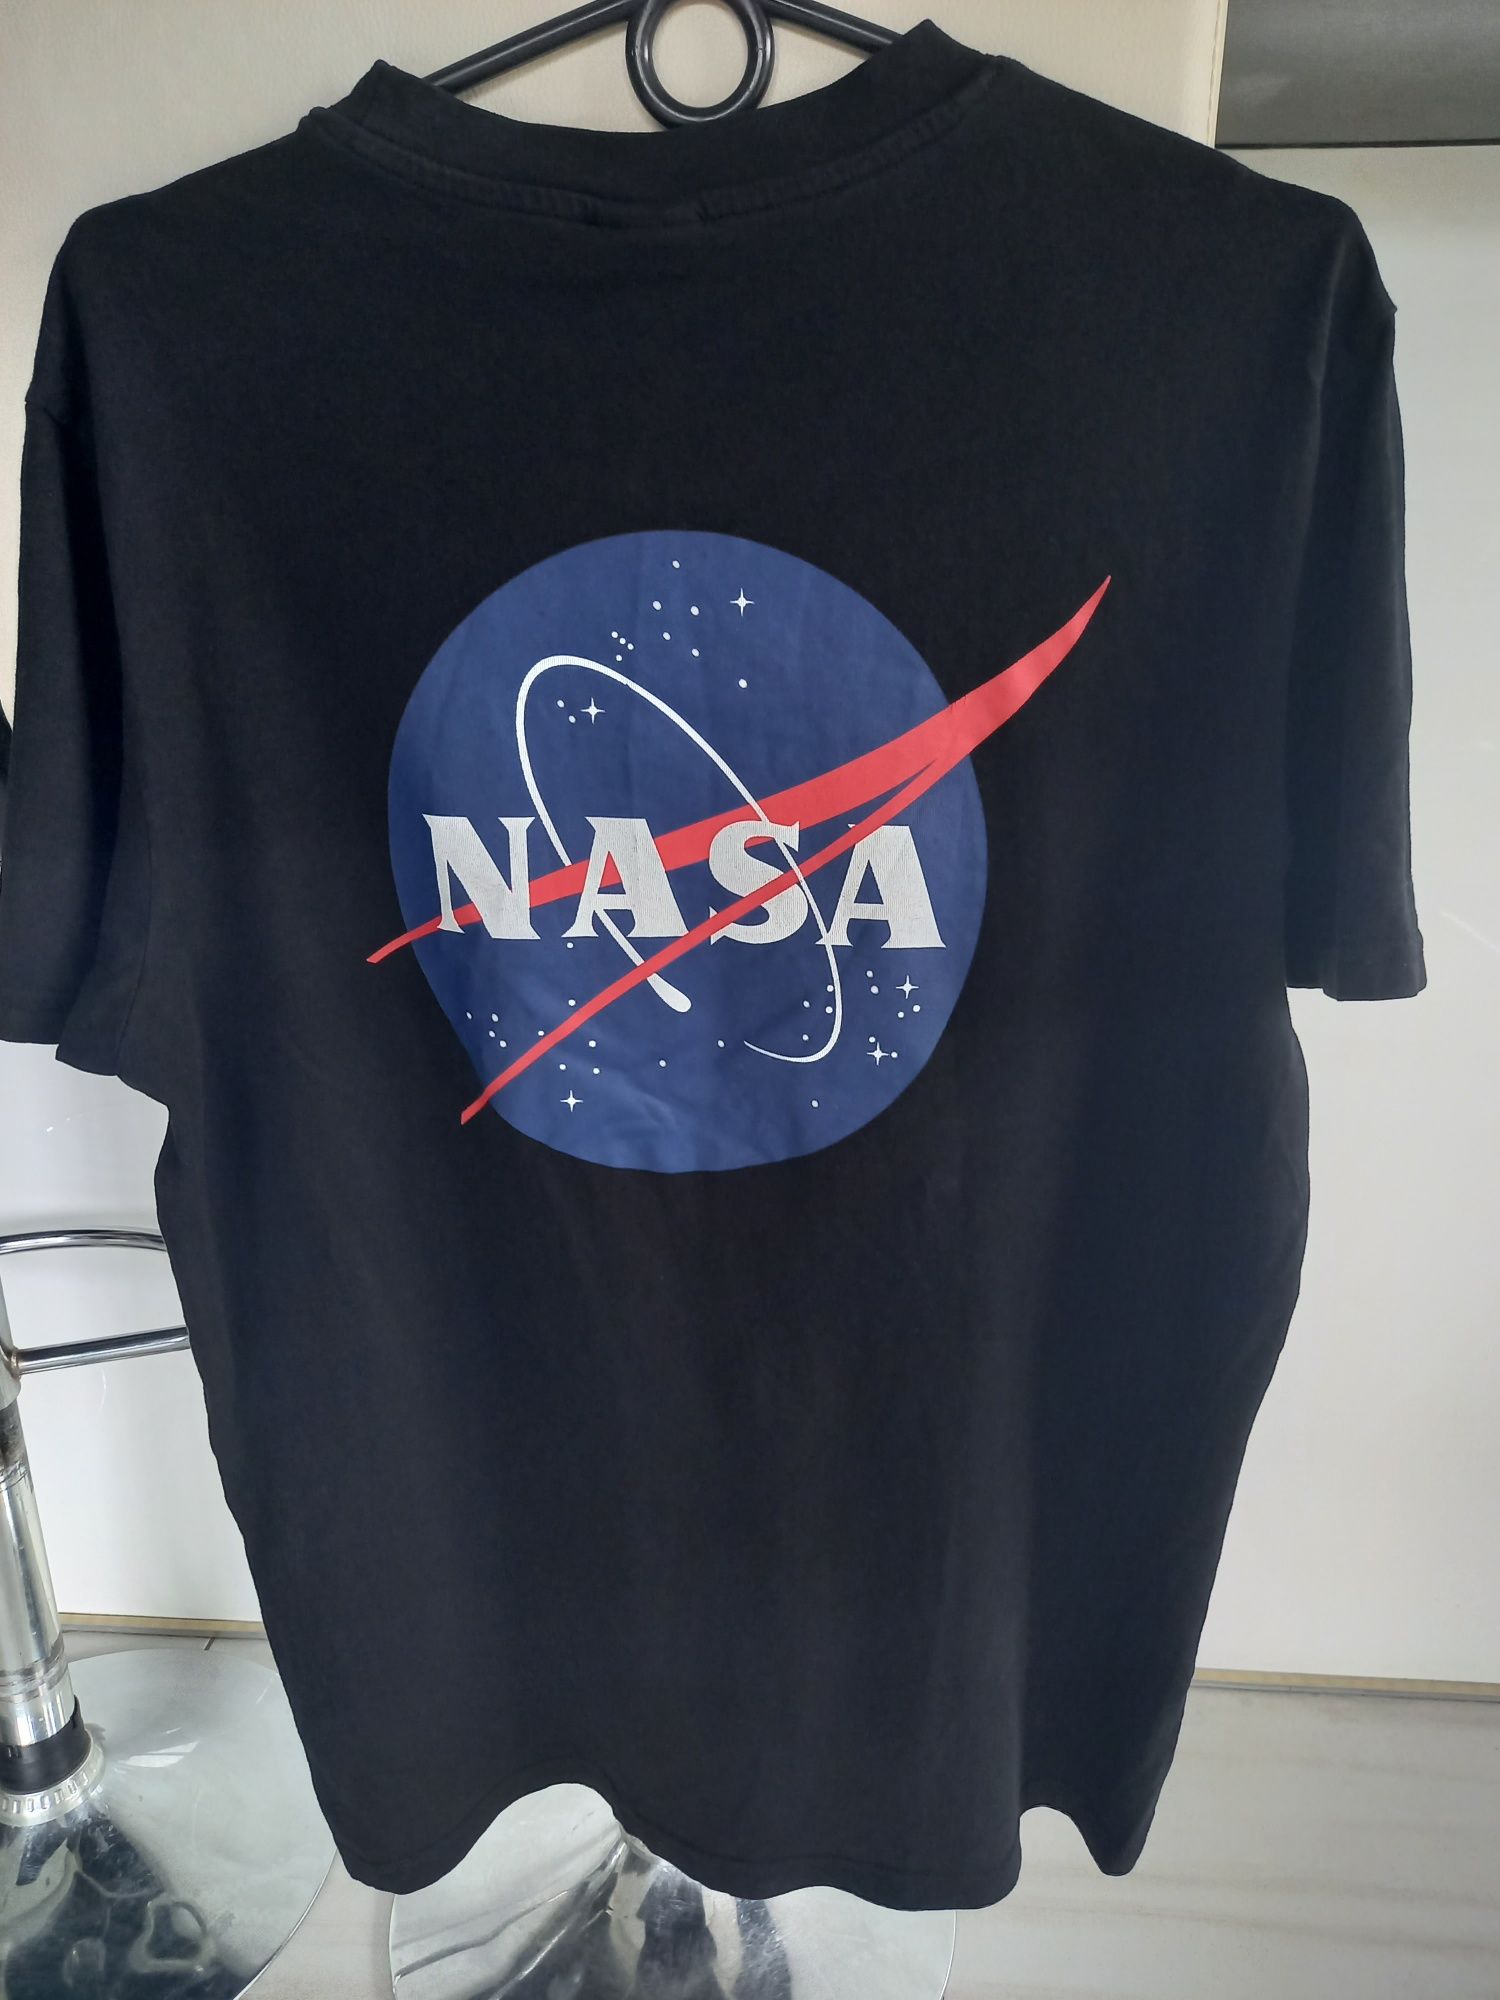 Czarny T-shirt z logo NASA marki H&M na rozmiar S.